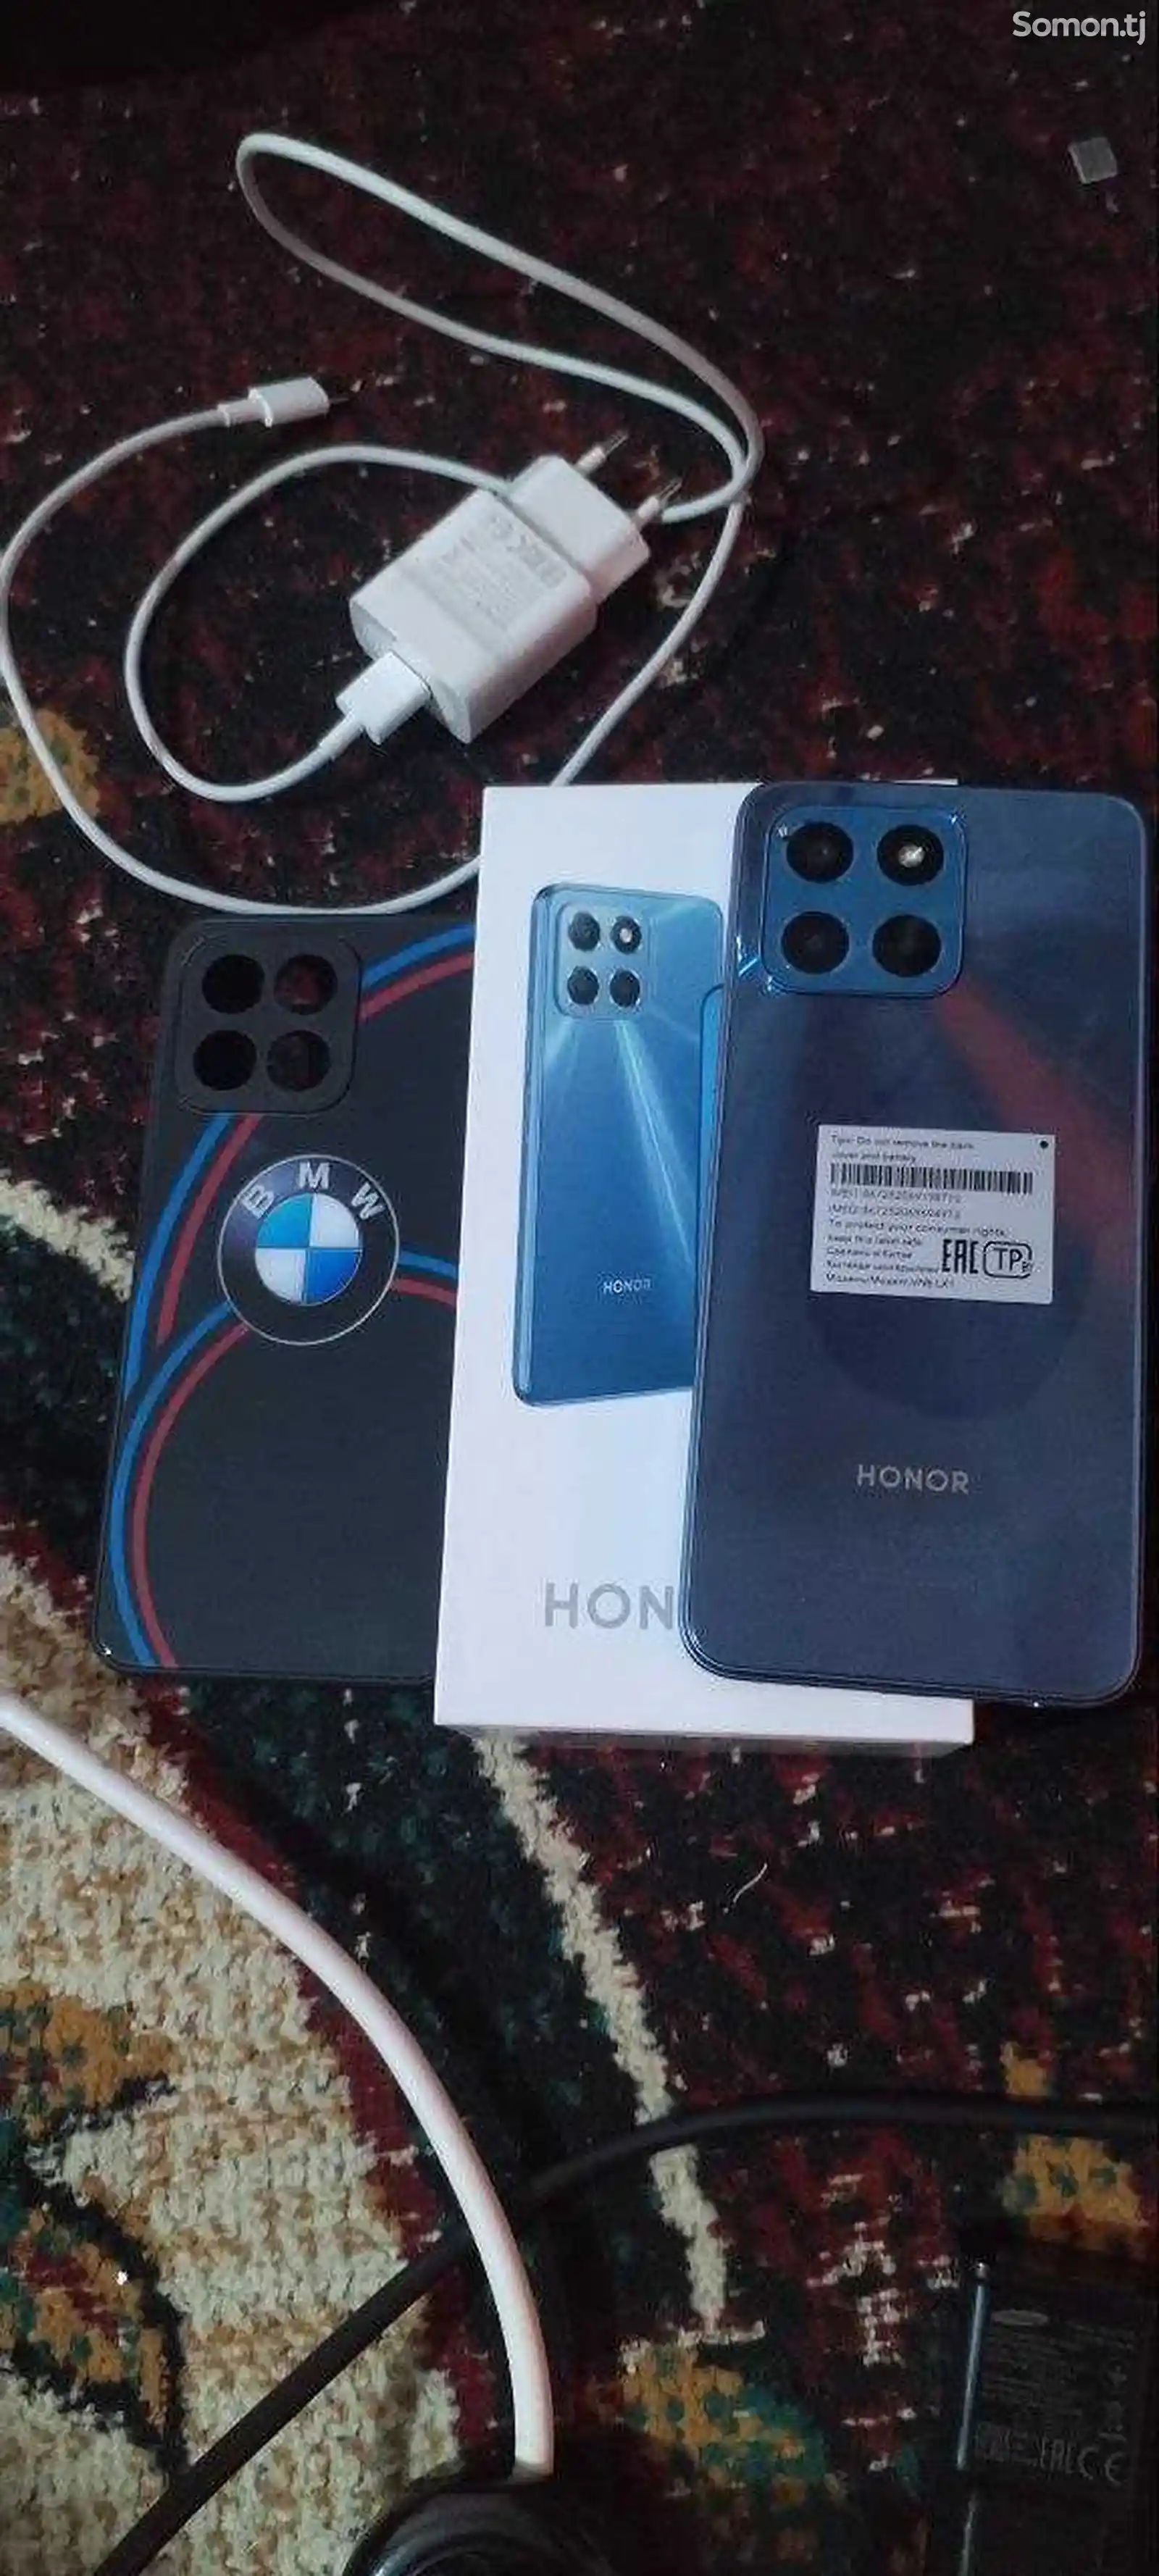 Huawei Hоnor X6-2